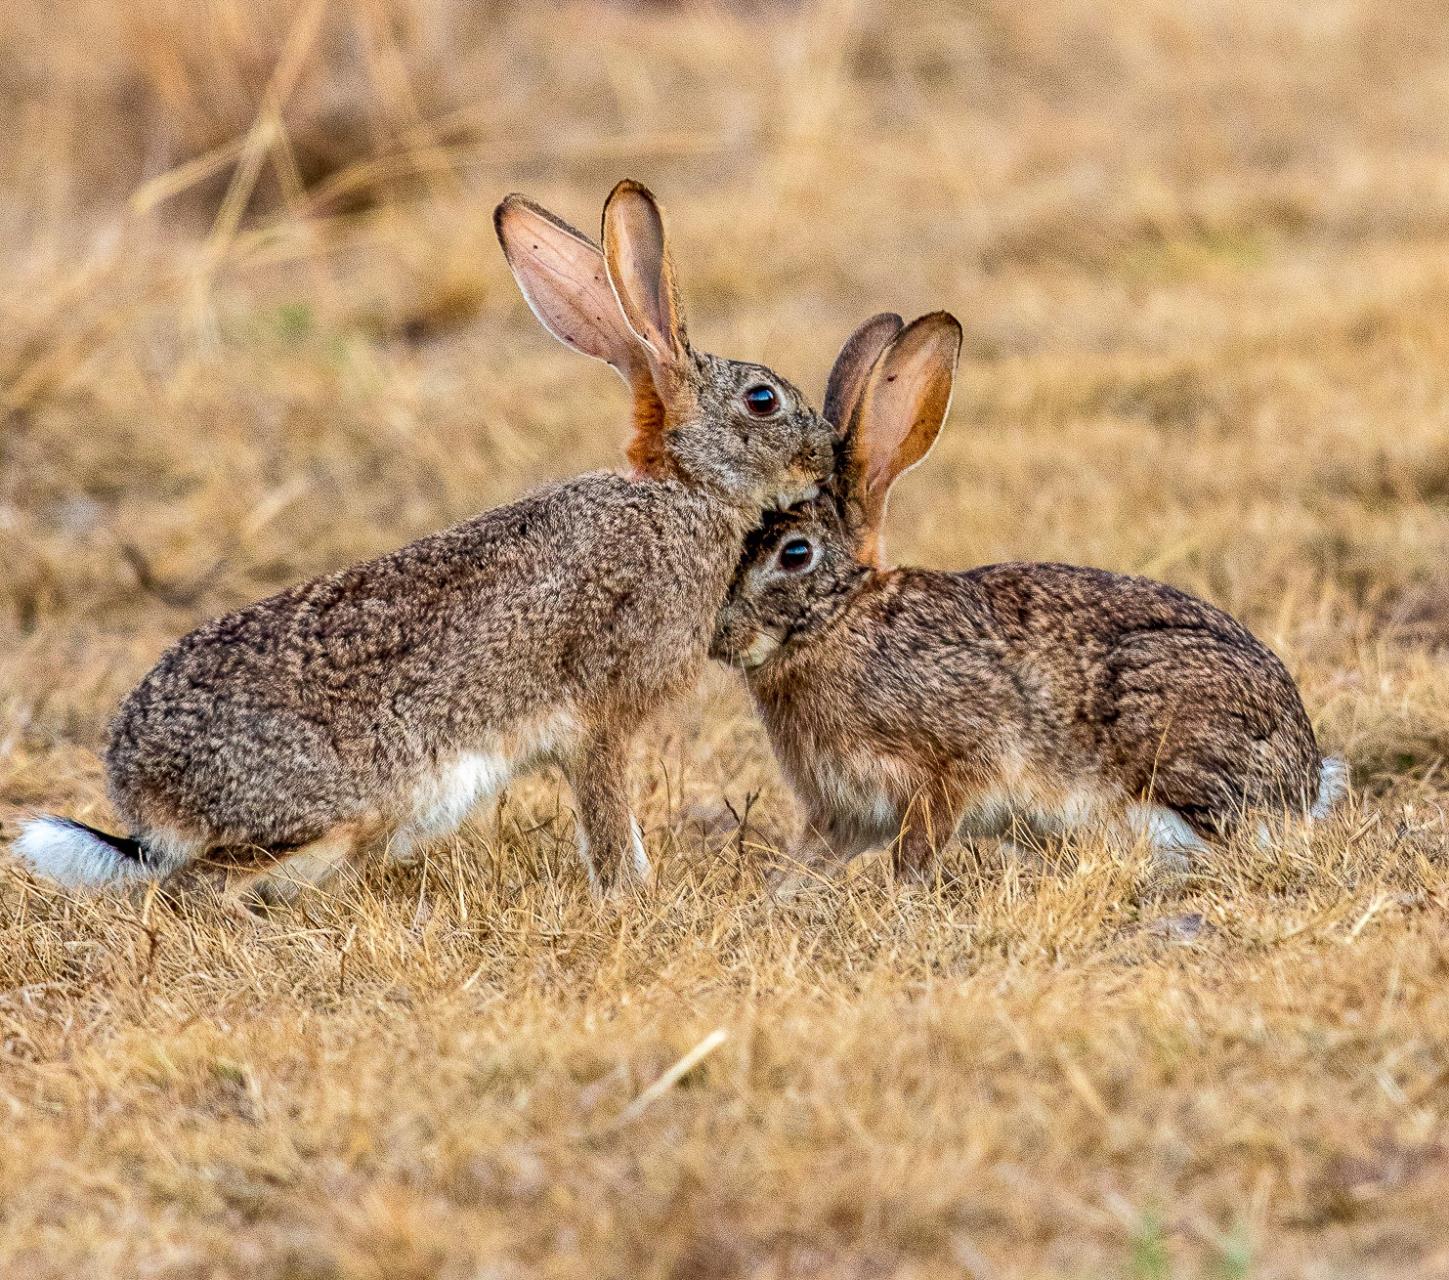 Feral rabbits